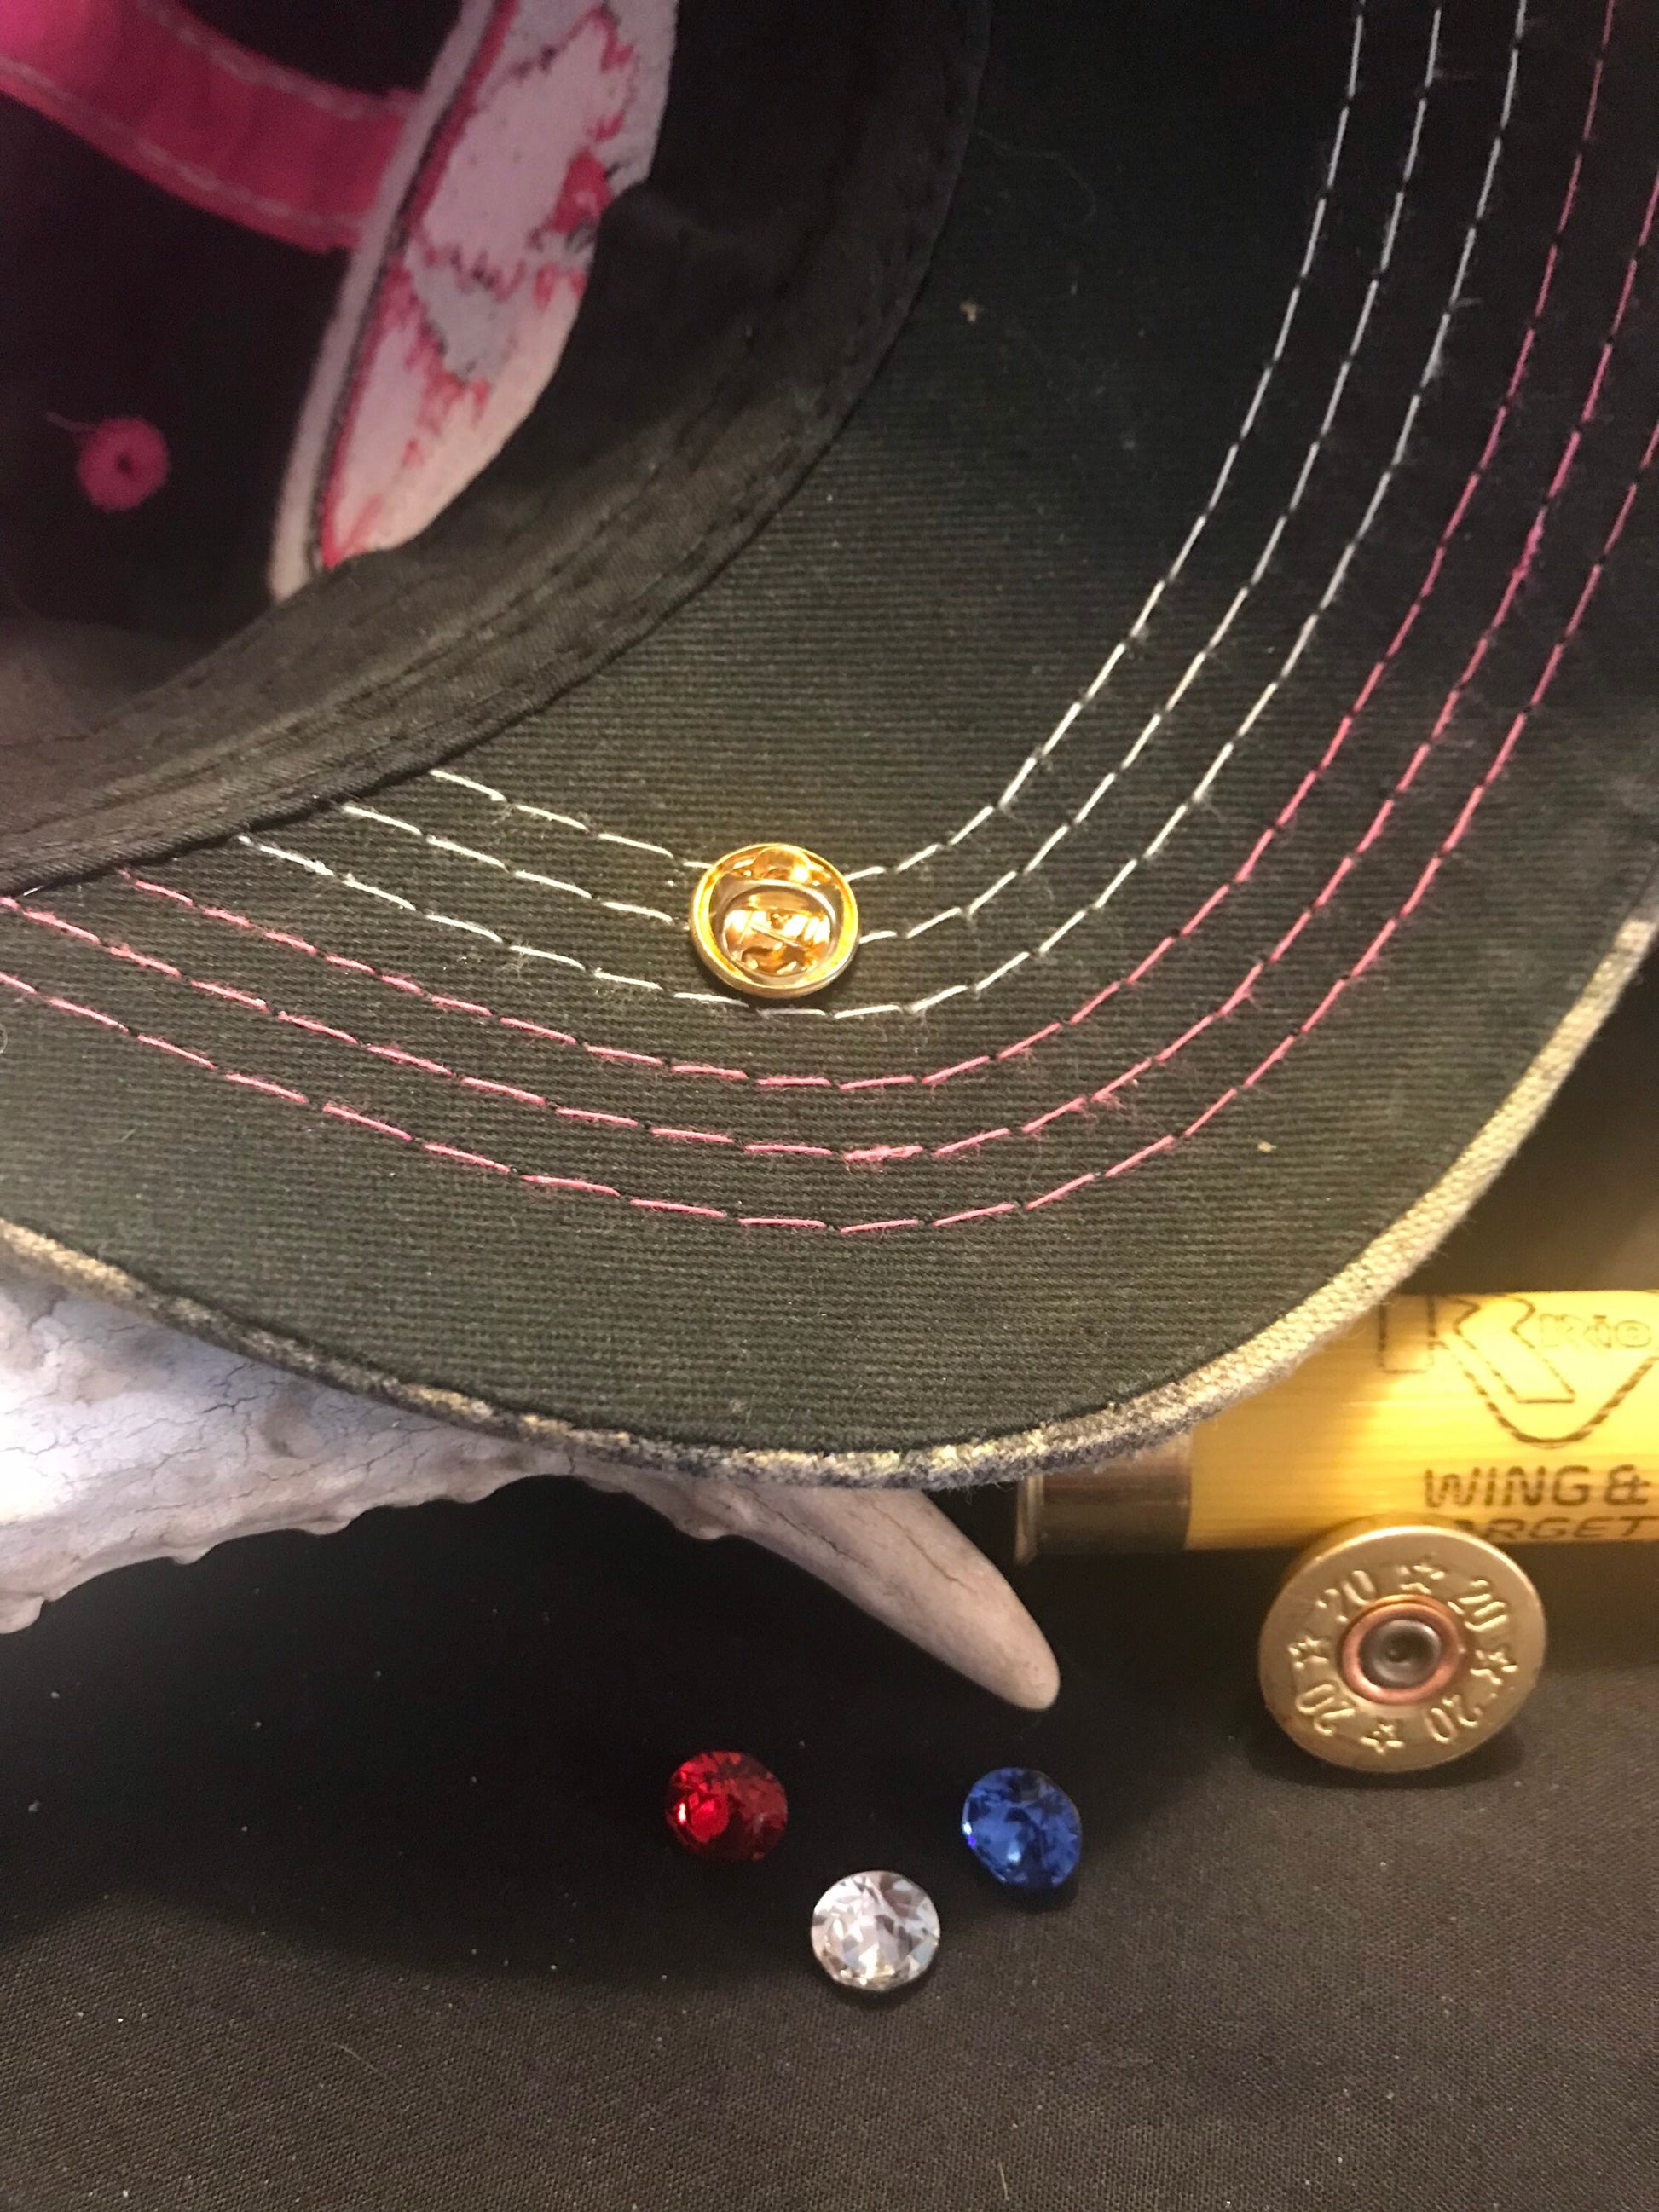 20 gauge shotgun hat pin, lapel pin